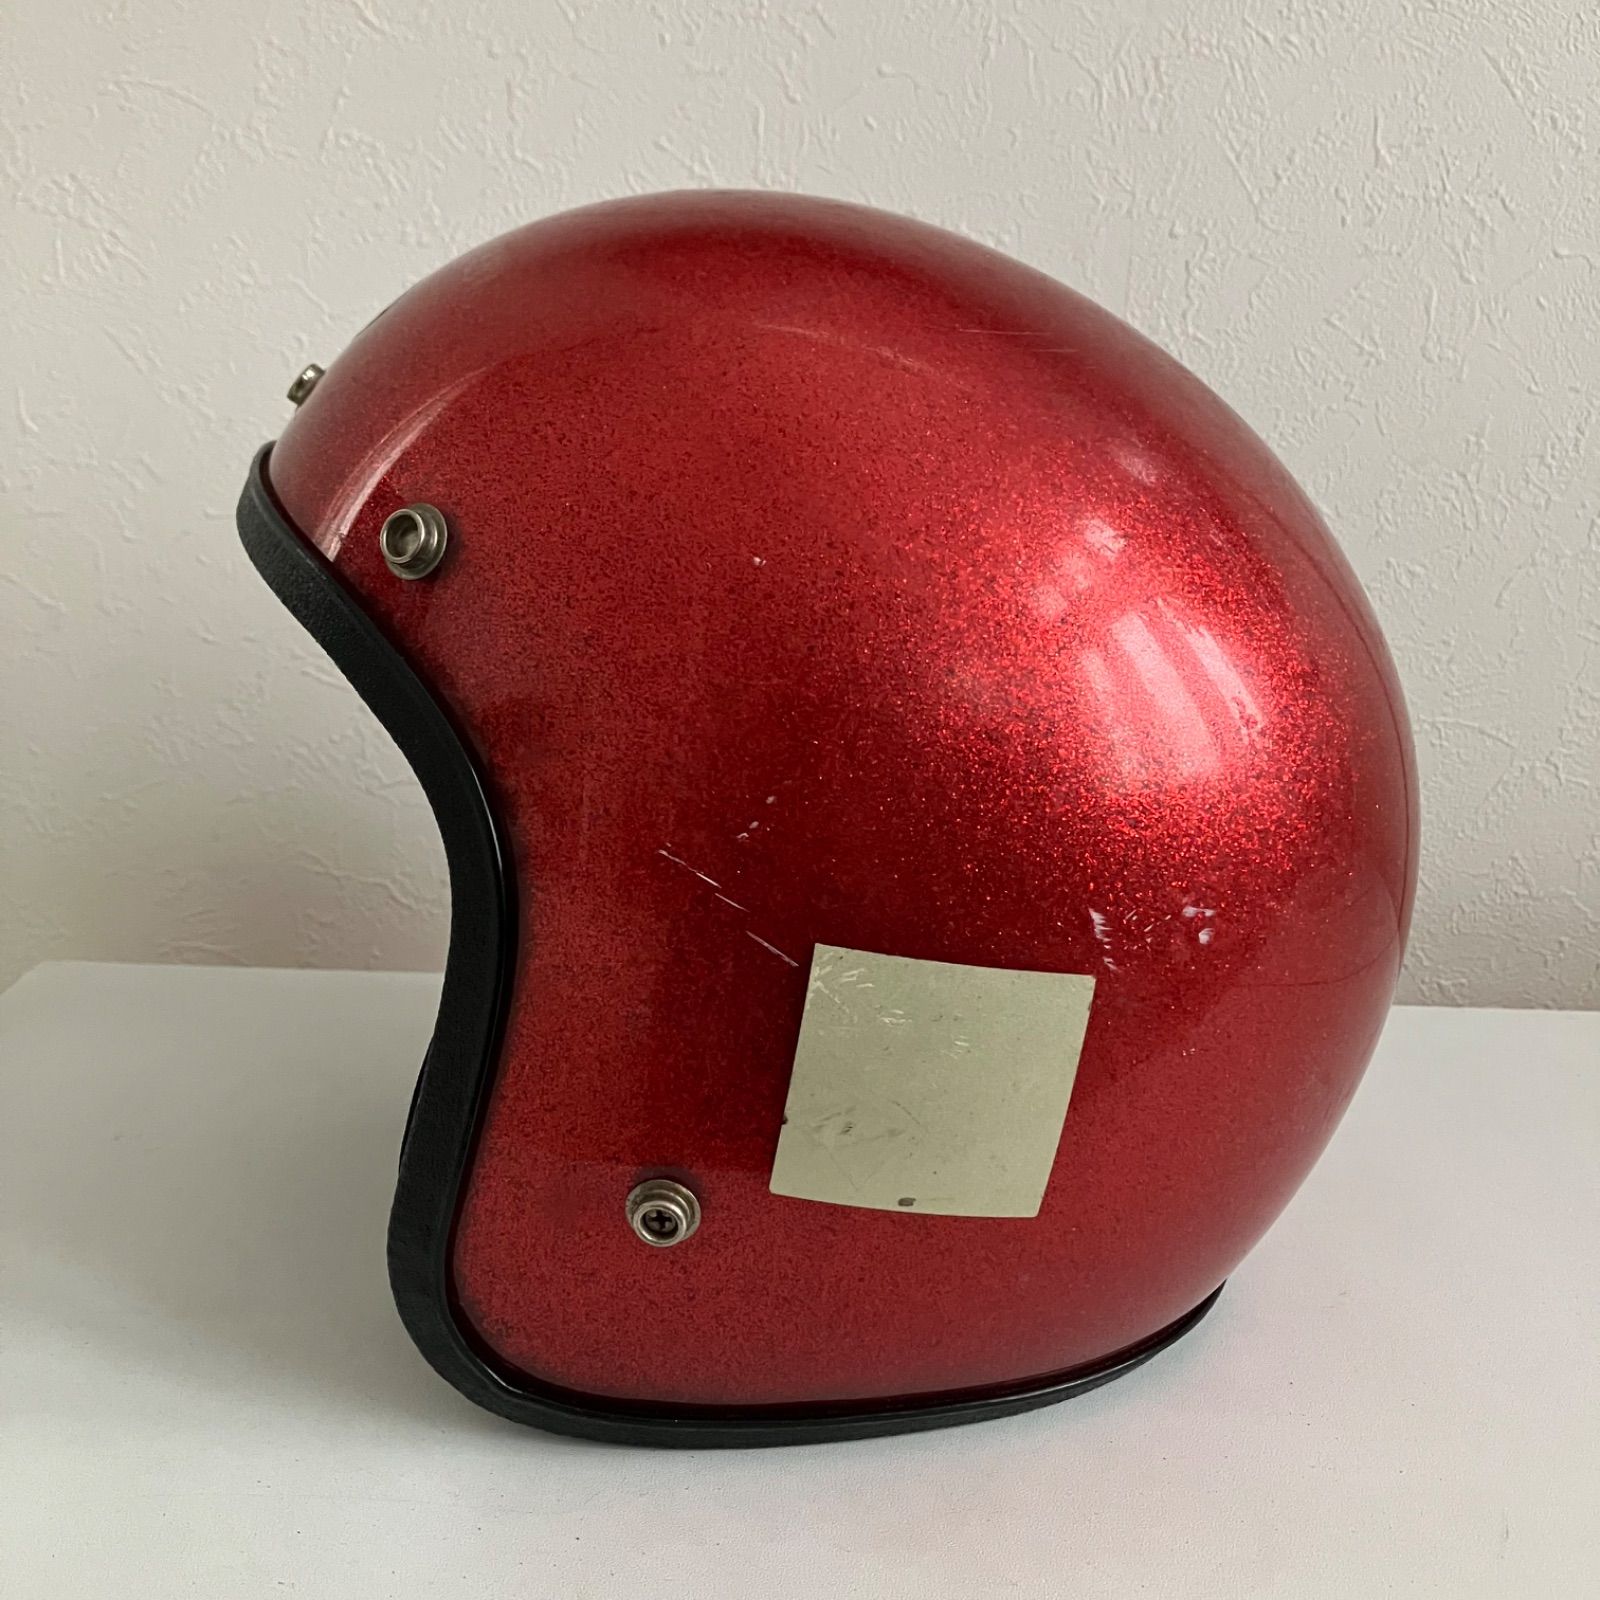 BON AIRE☆ビンテージヘルメット 1970年代 ヘルメット 赤 フレーク 